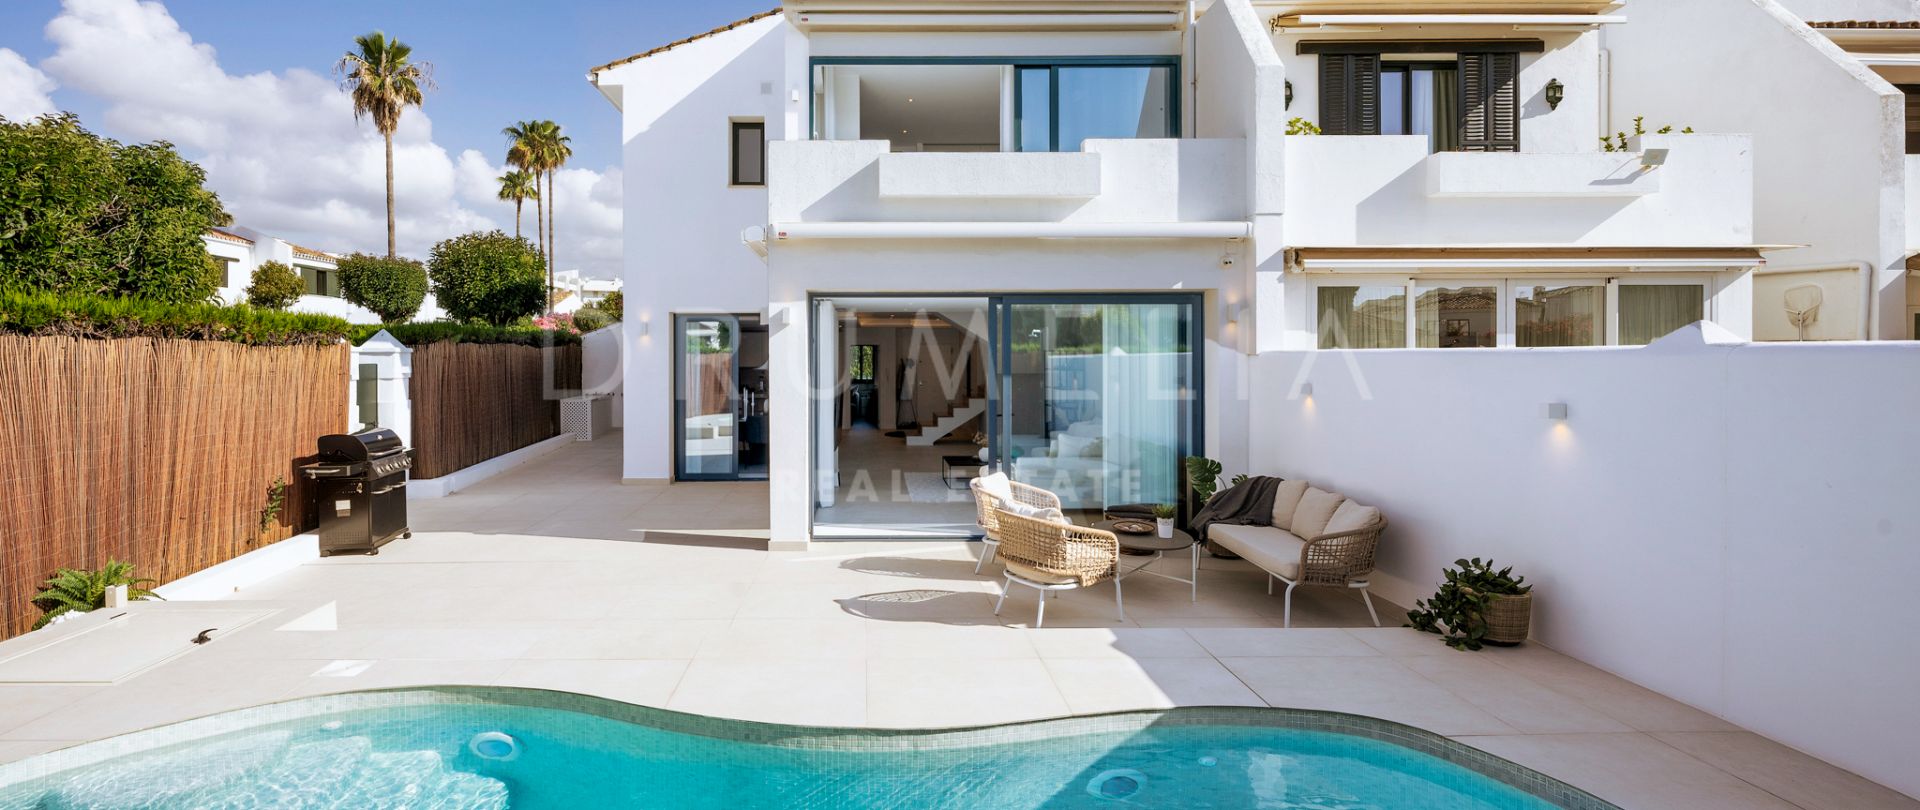 Wunderschön renoviertes Luxus-Stadthaus mit Garten und Pool in San Pedro de Alcantara, Marbella